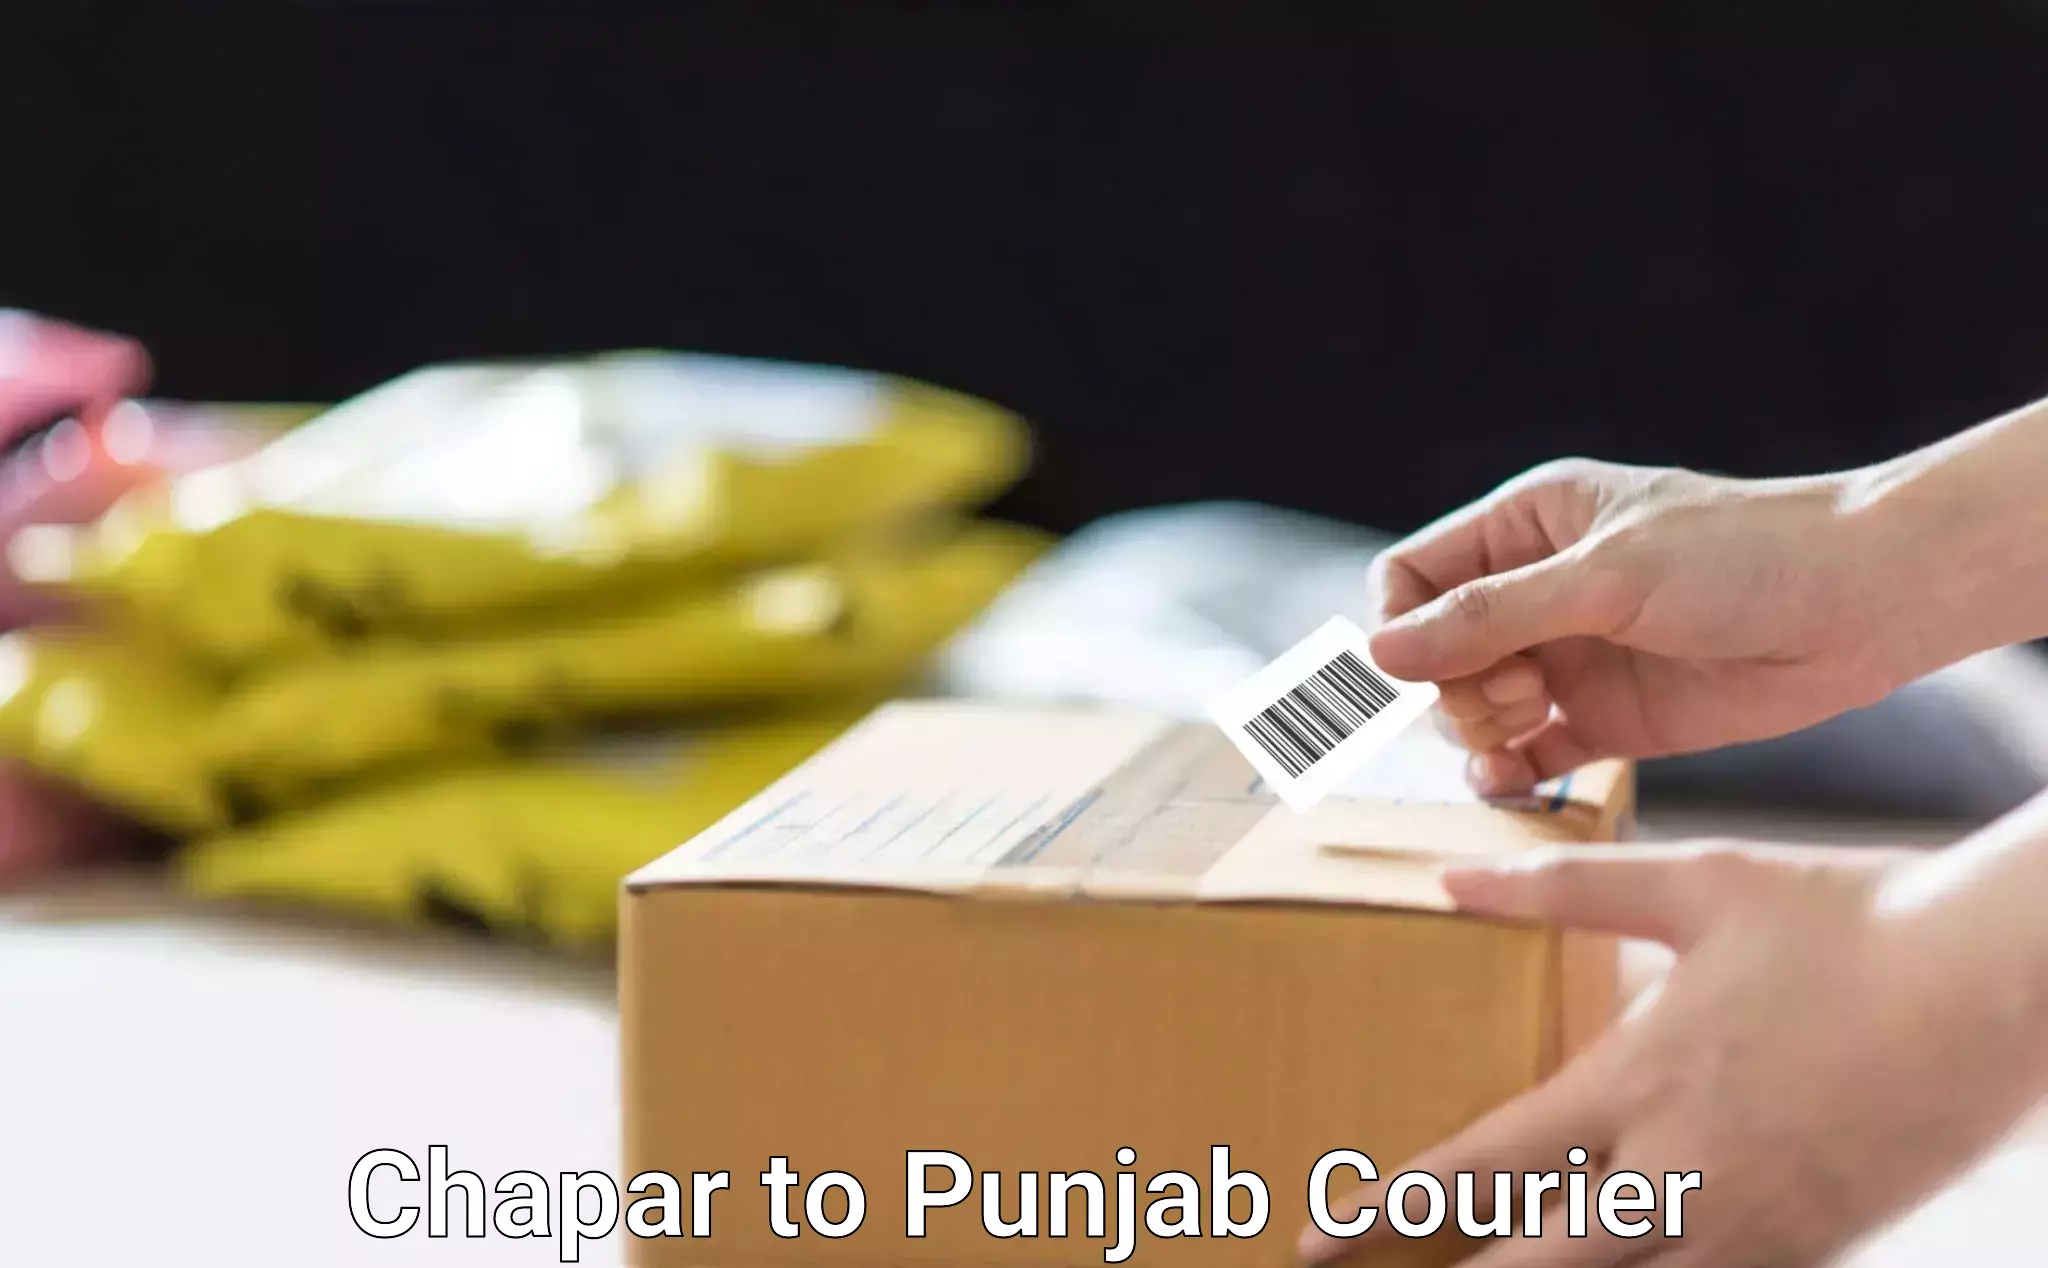 Efficient parcel delivery Chapar to Punjab